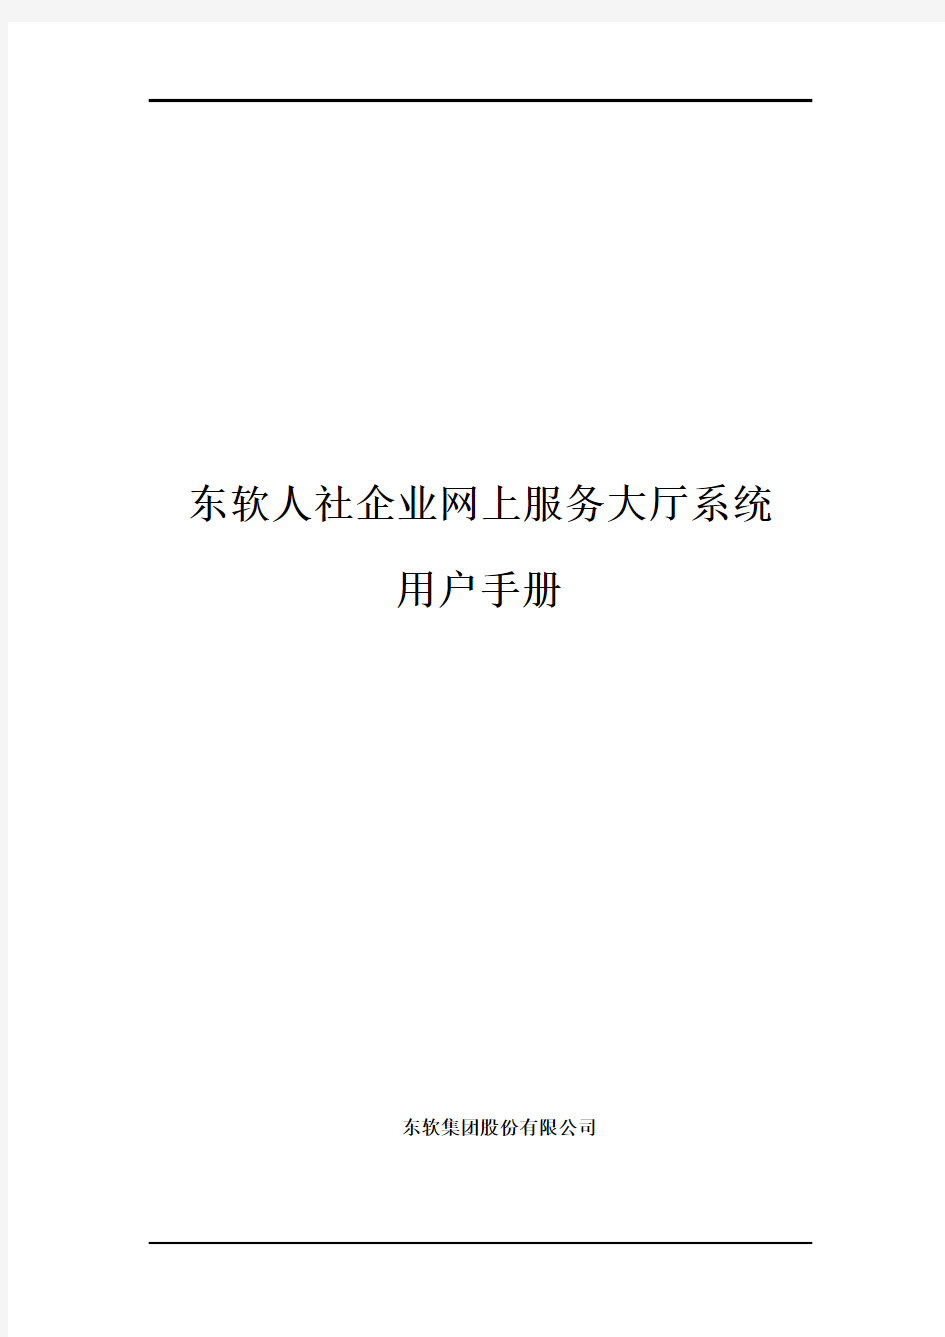 天津人社企业网上服务大厅系统V2用户手册(供企业用户使用)